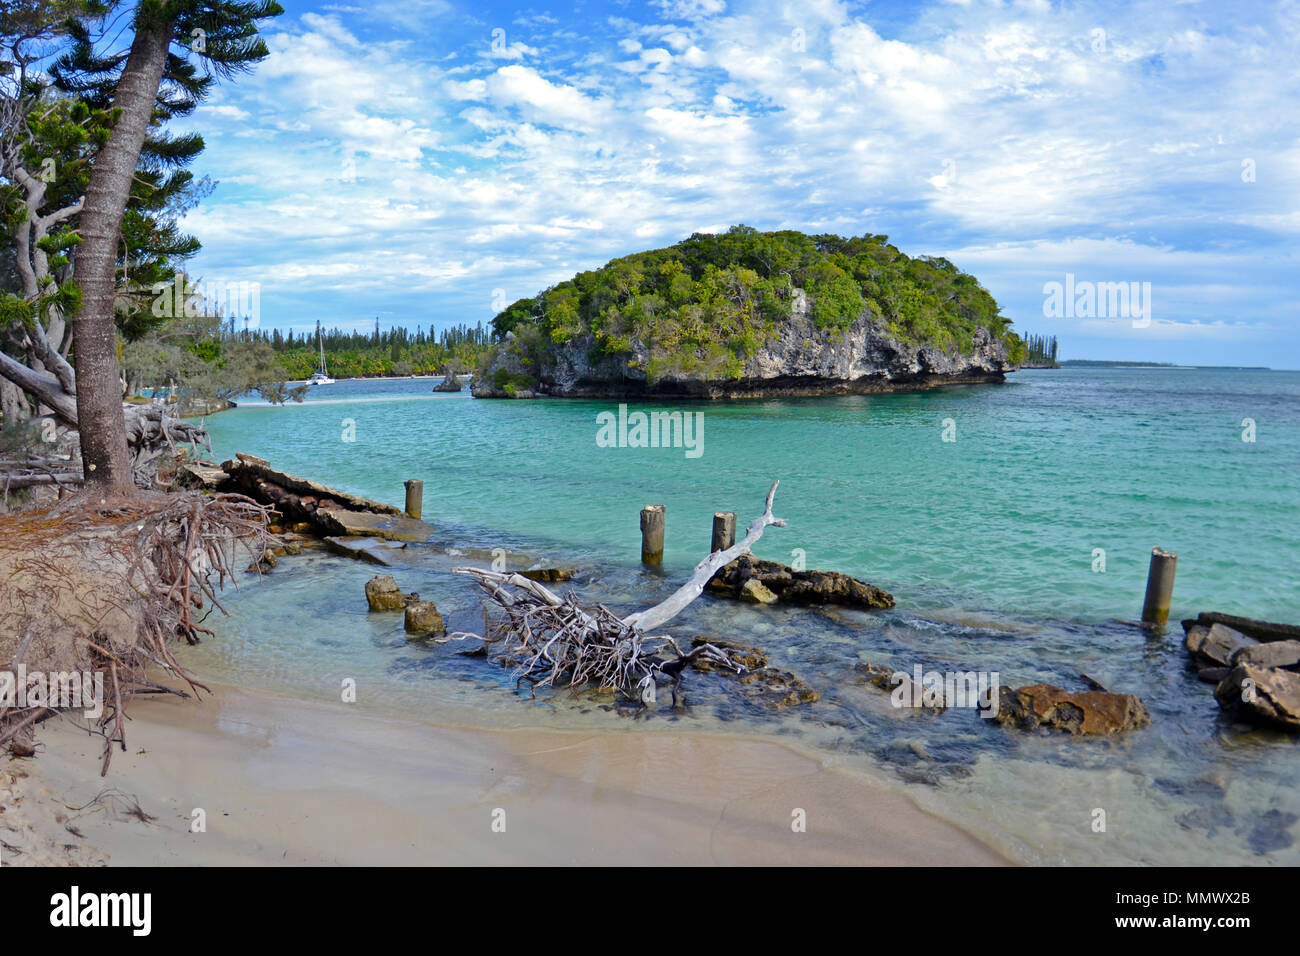 Kanumera isoletta sulla baia di Kanumera, Isola dei Pini, Nuova Caledonia, Sud Pacifico Foto Stock